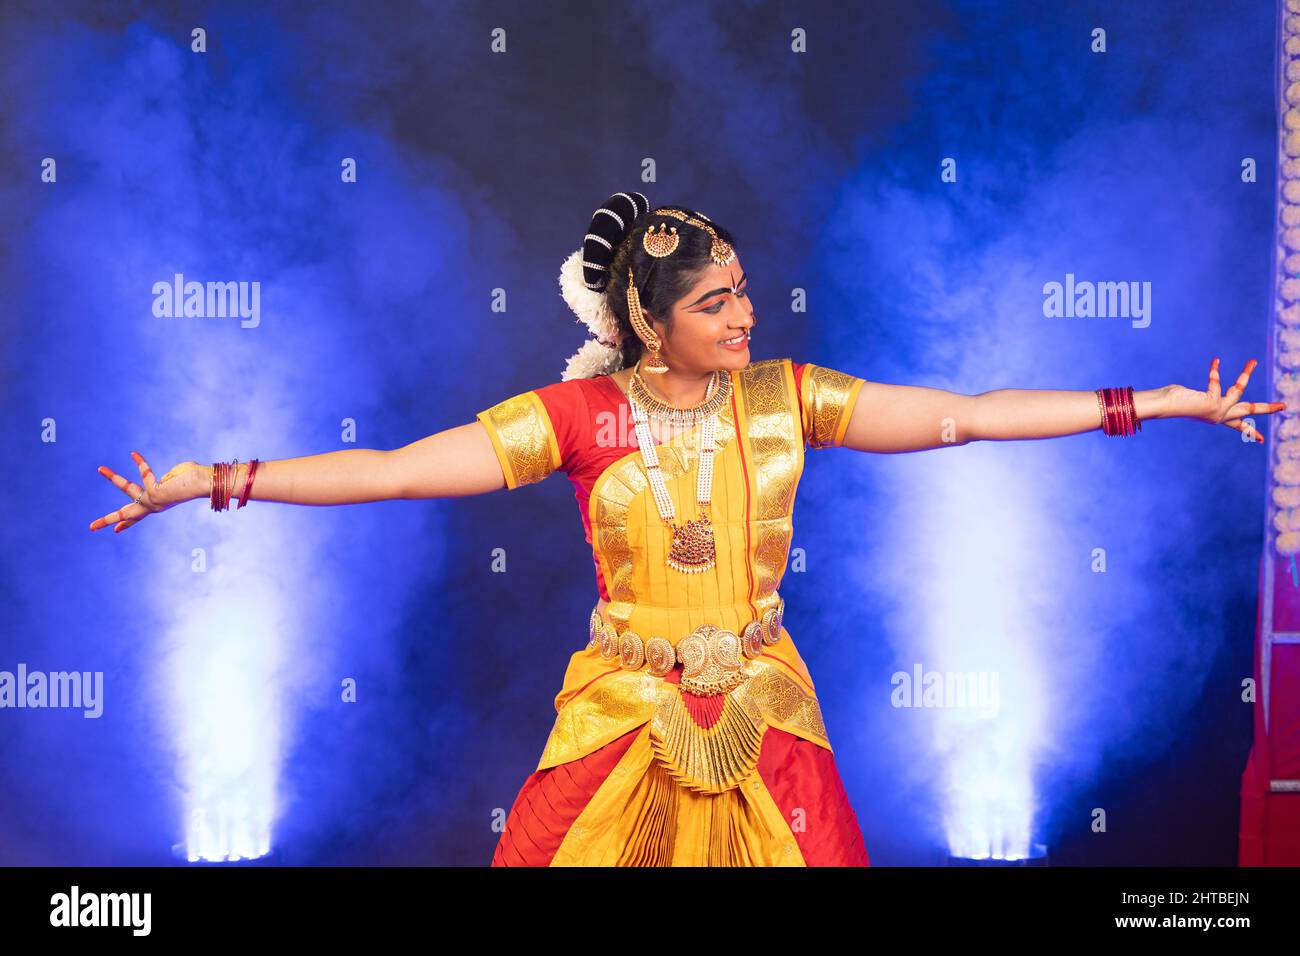 Danseuse indienne souriante bharatanatyam sur scène dansant avec les mains gestuelle - adepte de l'artiste, de la culture indienne traditionnelle et danseuse clasique. Banque D'Images